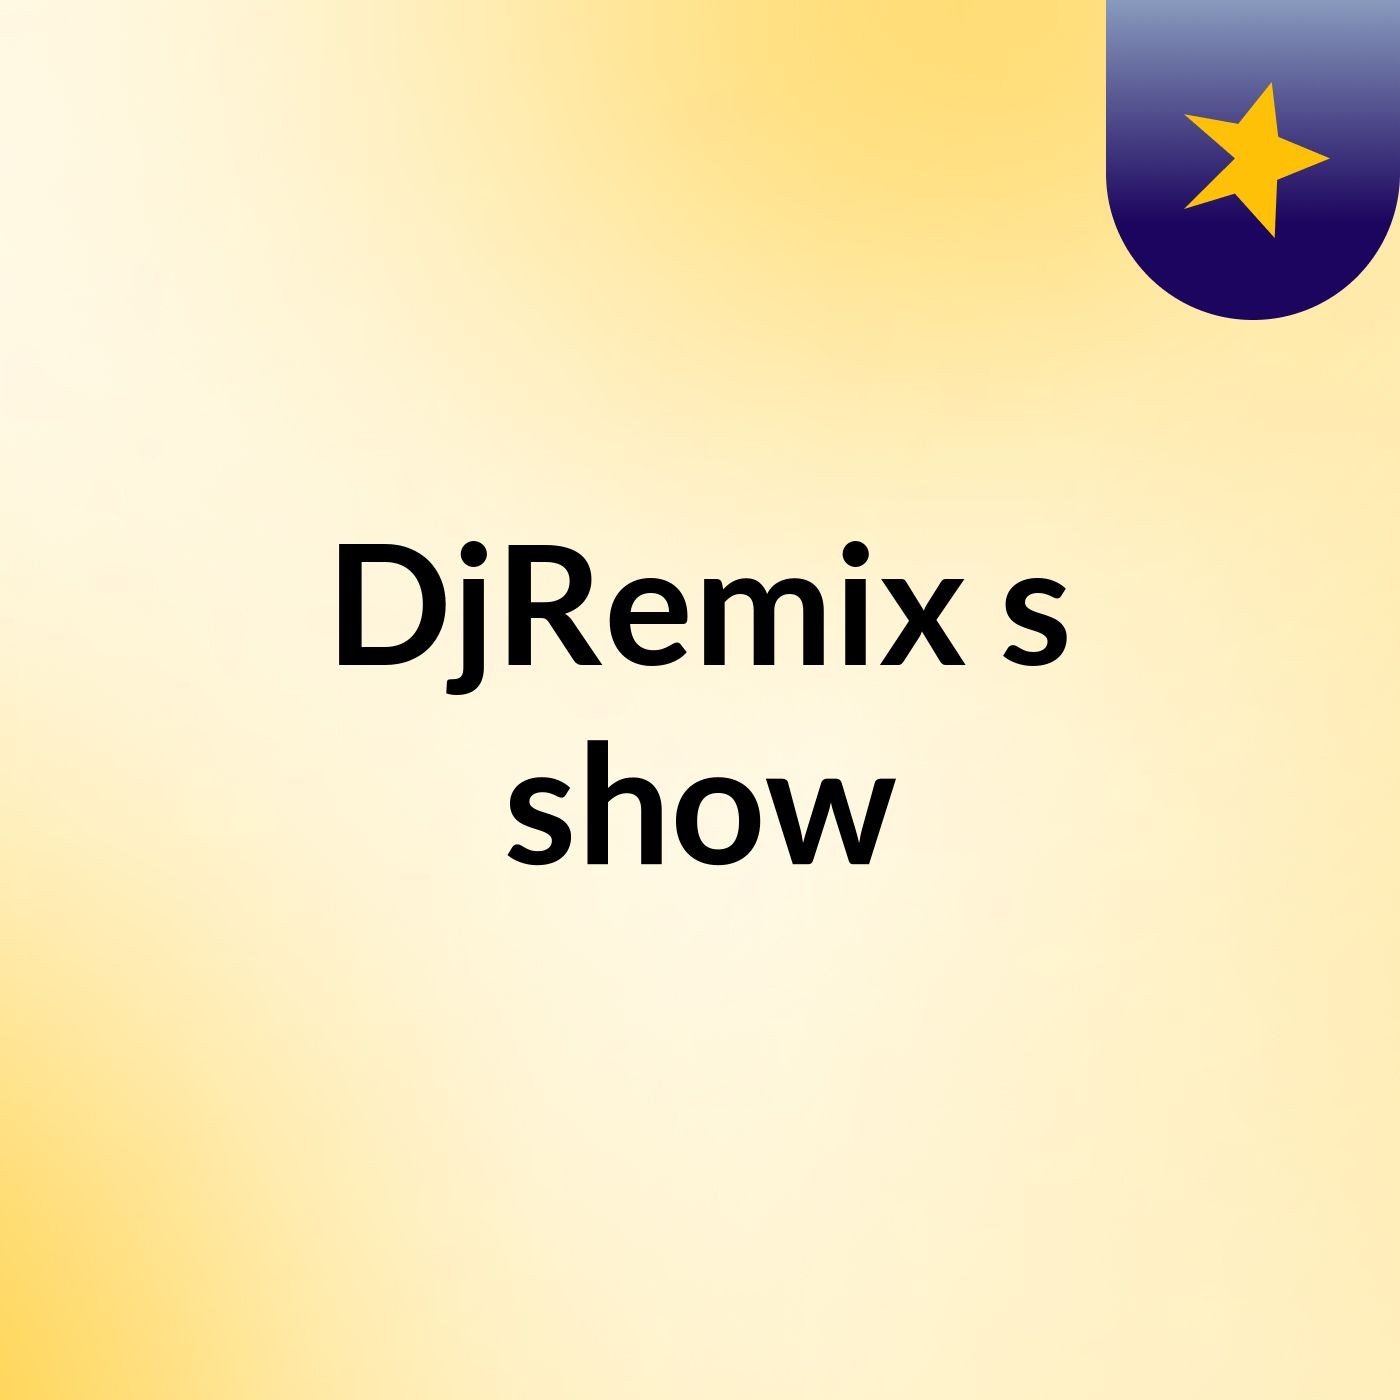 DjRemix's show